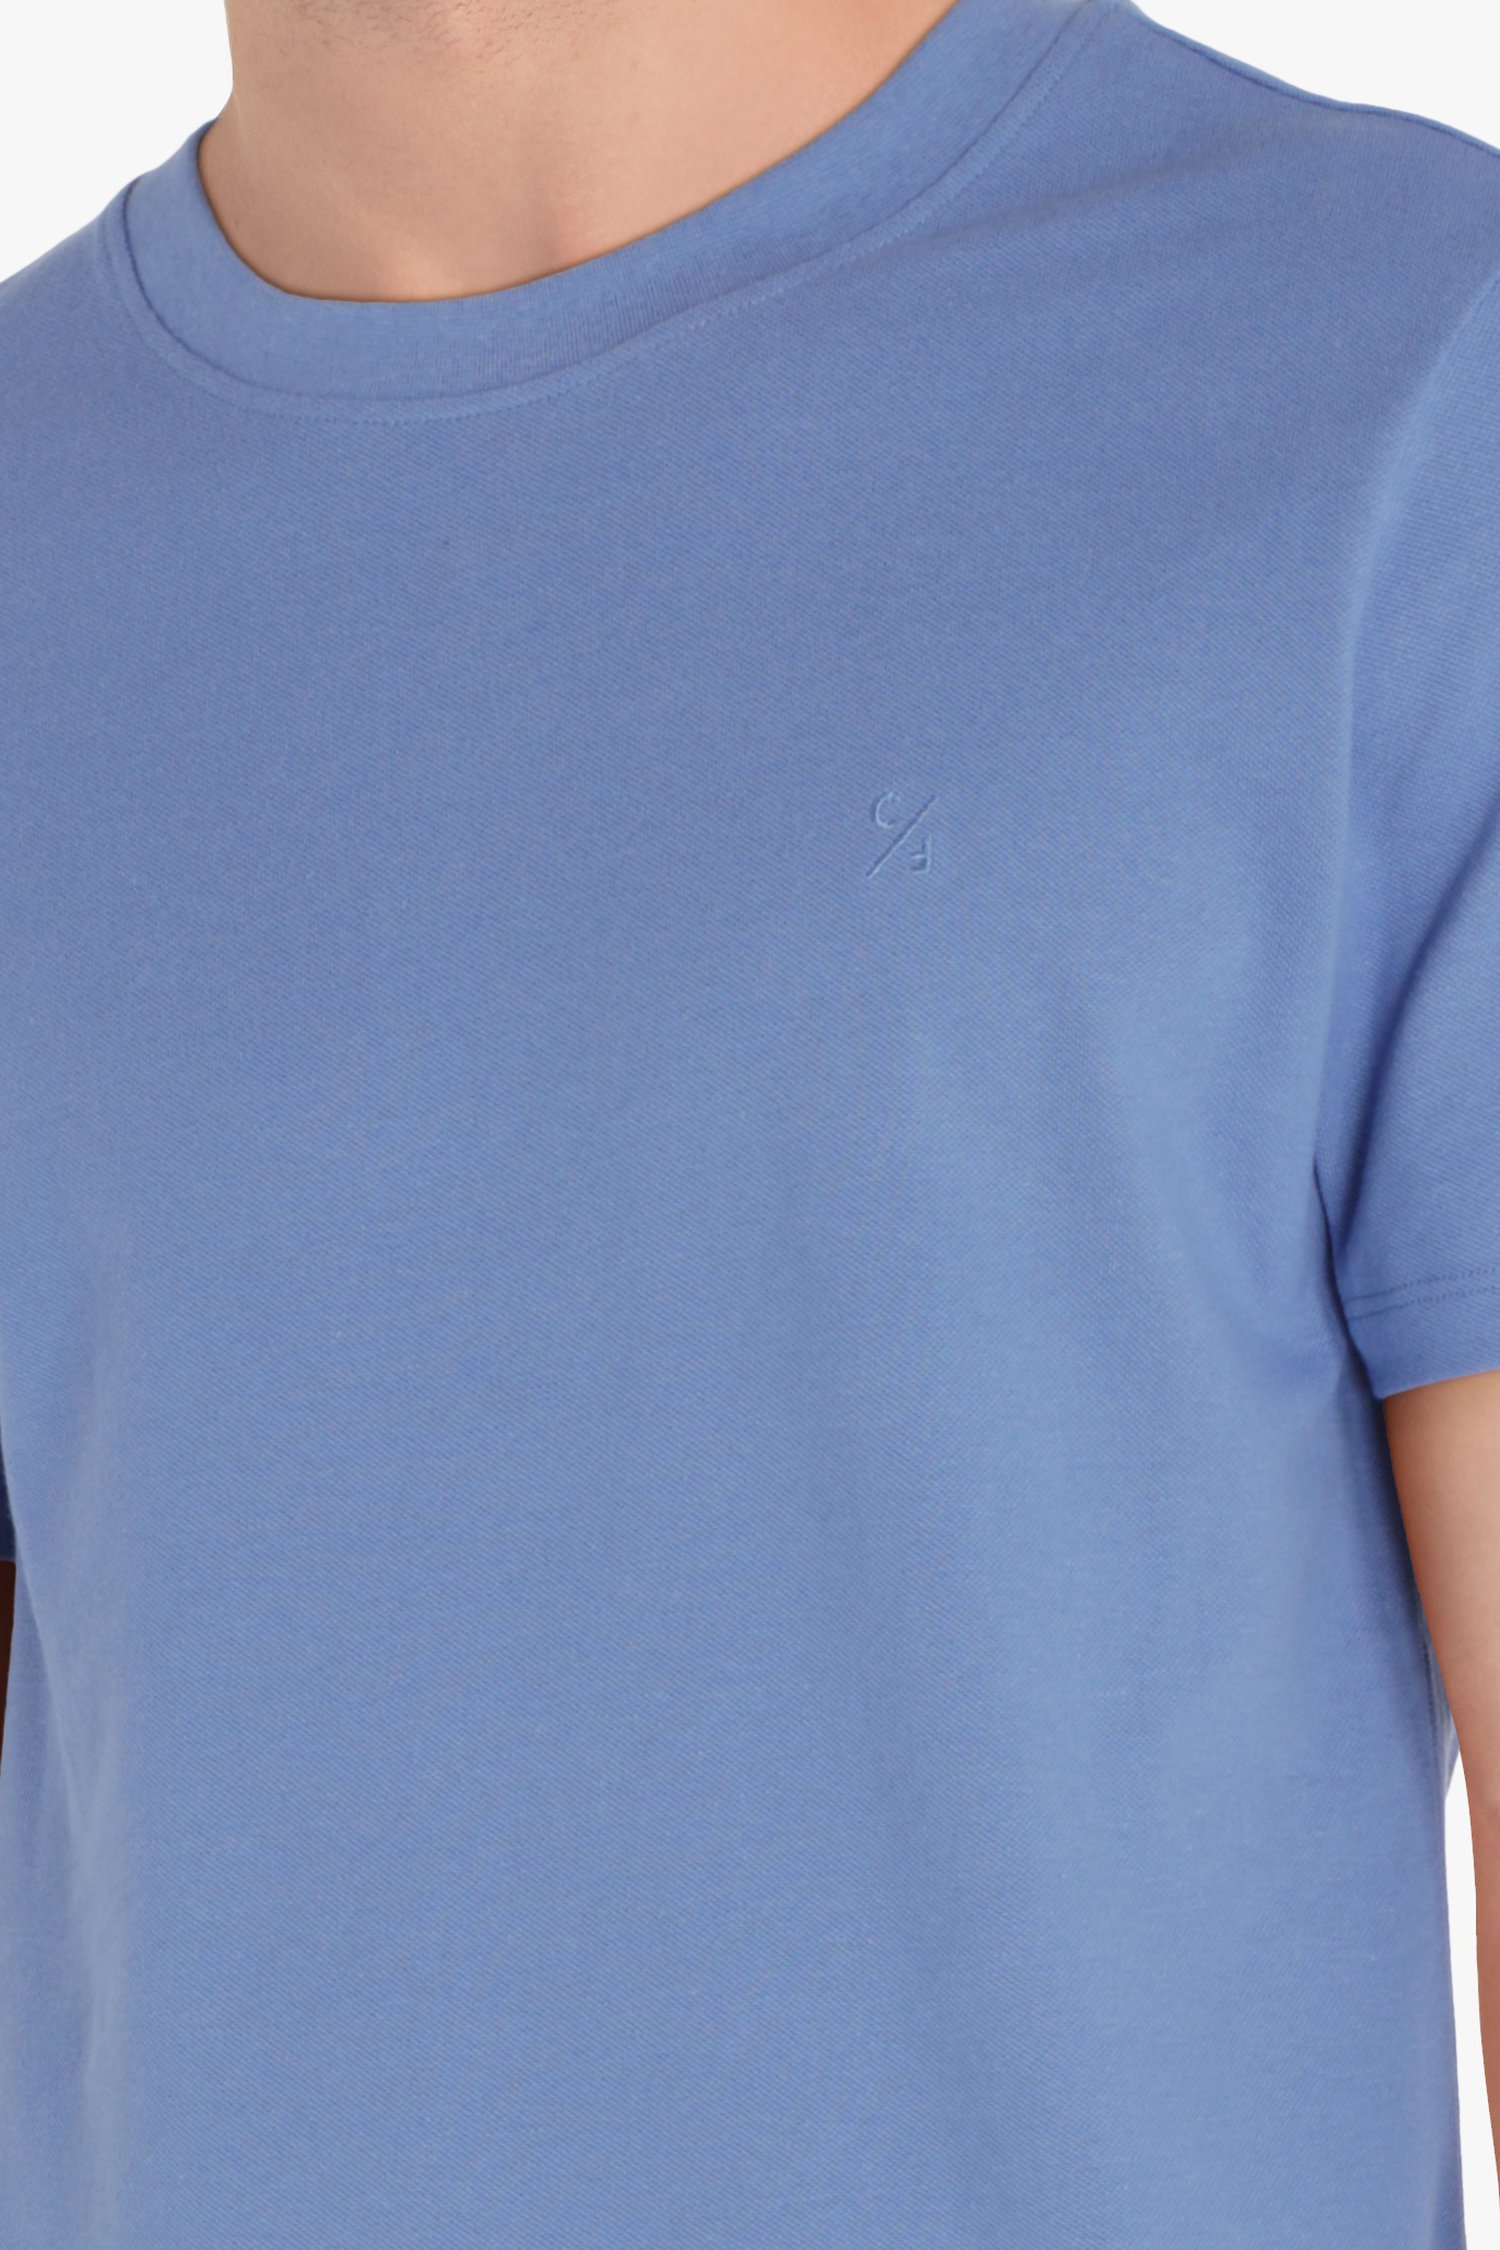 Lichtblauw T-shirt met ronde hals van Casual Friday voor Heren